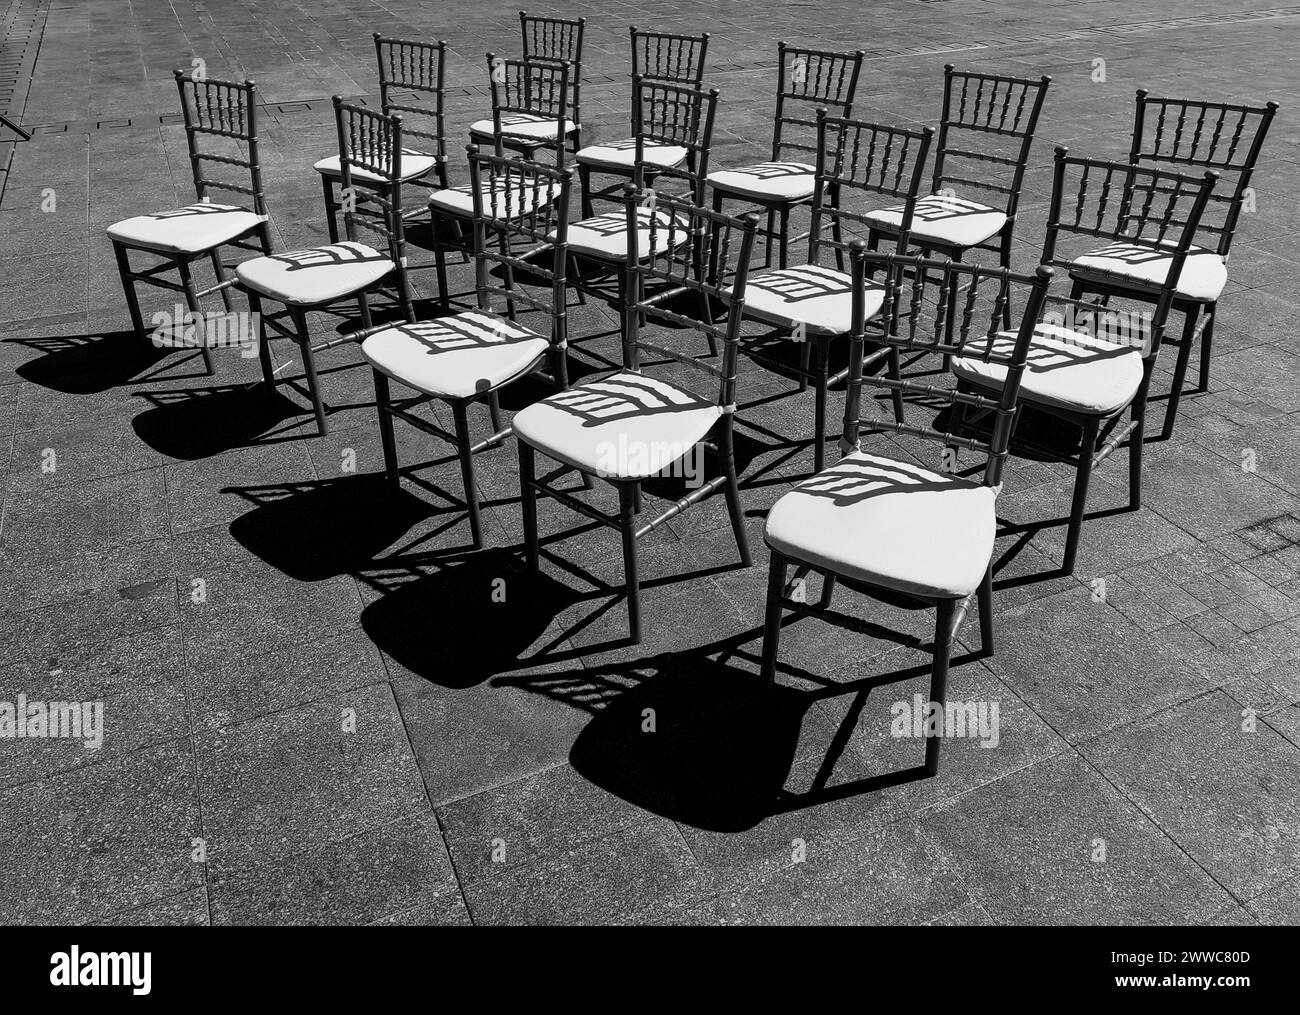 Sièges ensoleillés. Un défilé de 15 chaises sur la place de la ville. Lumière et ombre. Motif et texture. Noir et blanc, monochrome. Banque D'Images